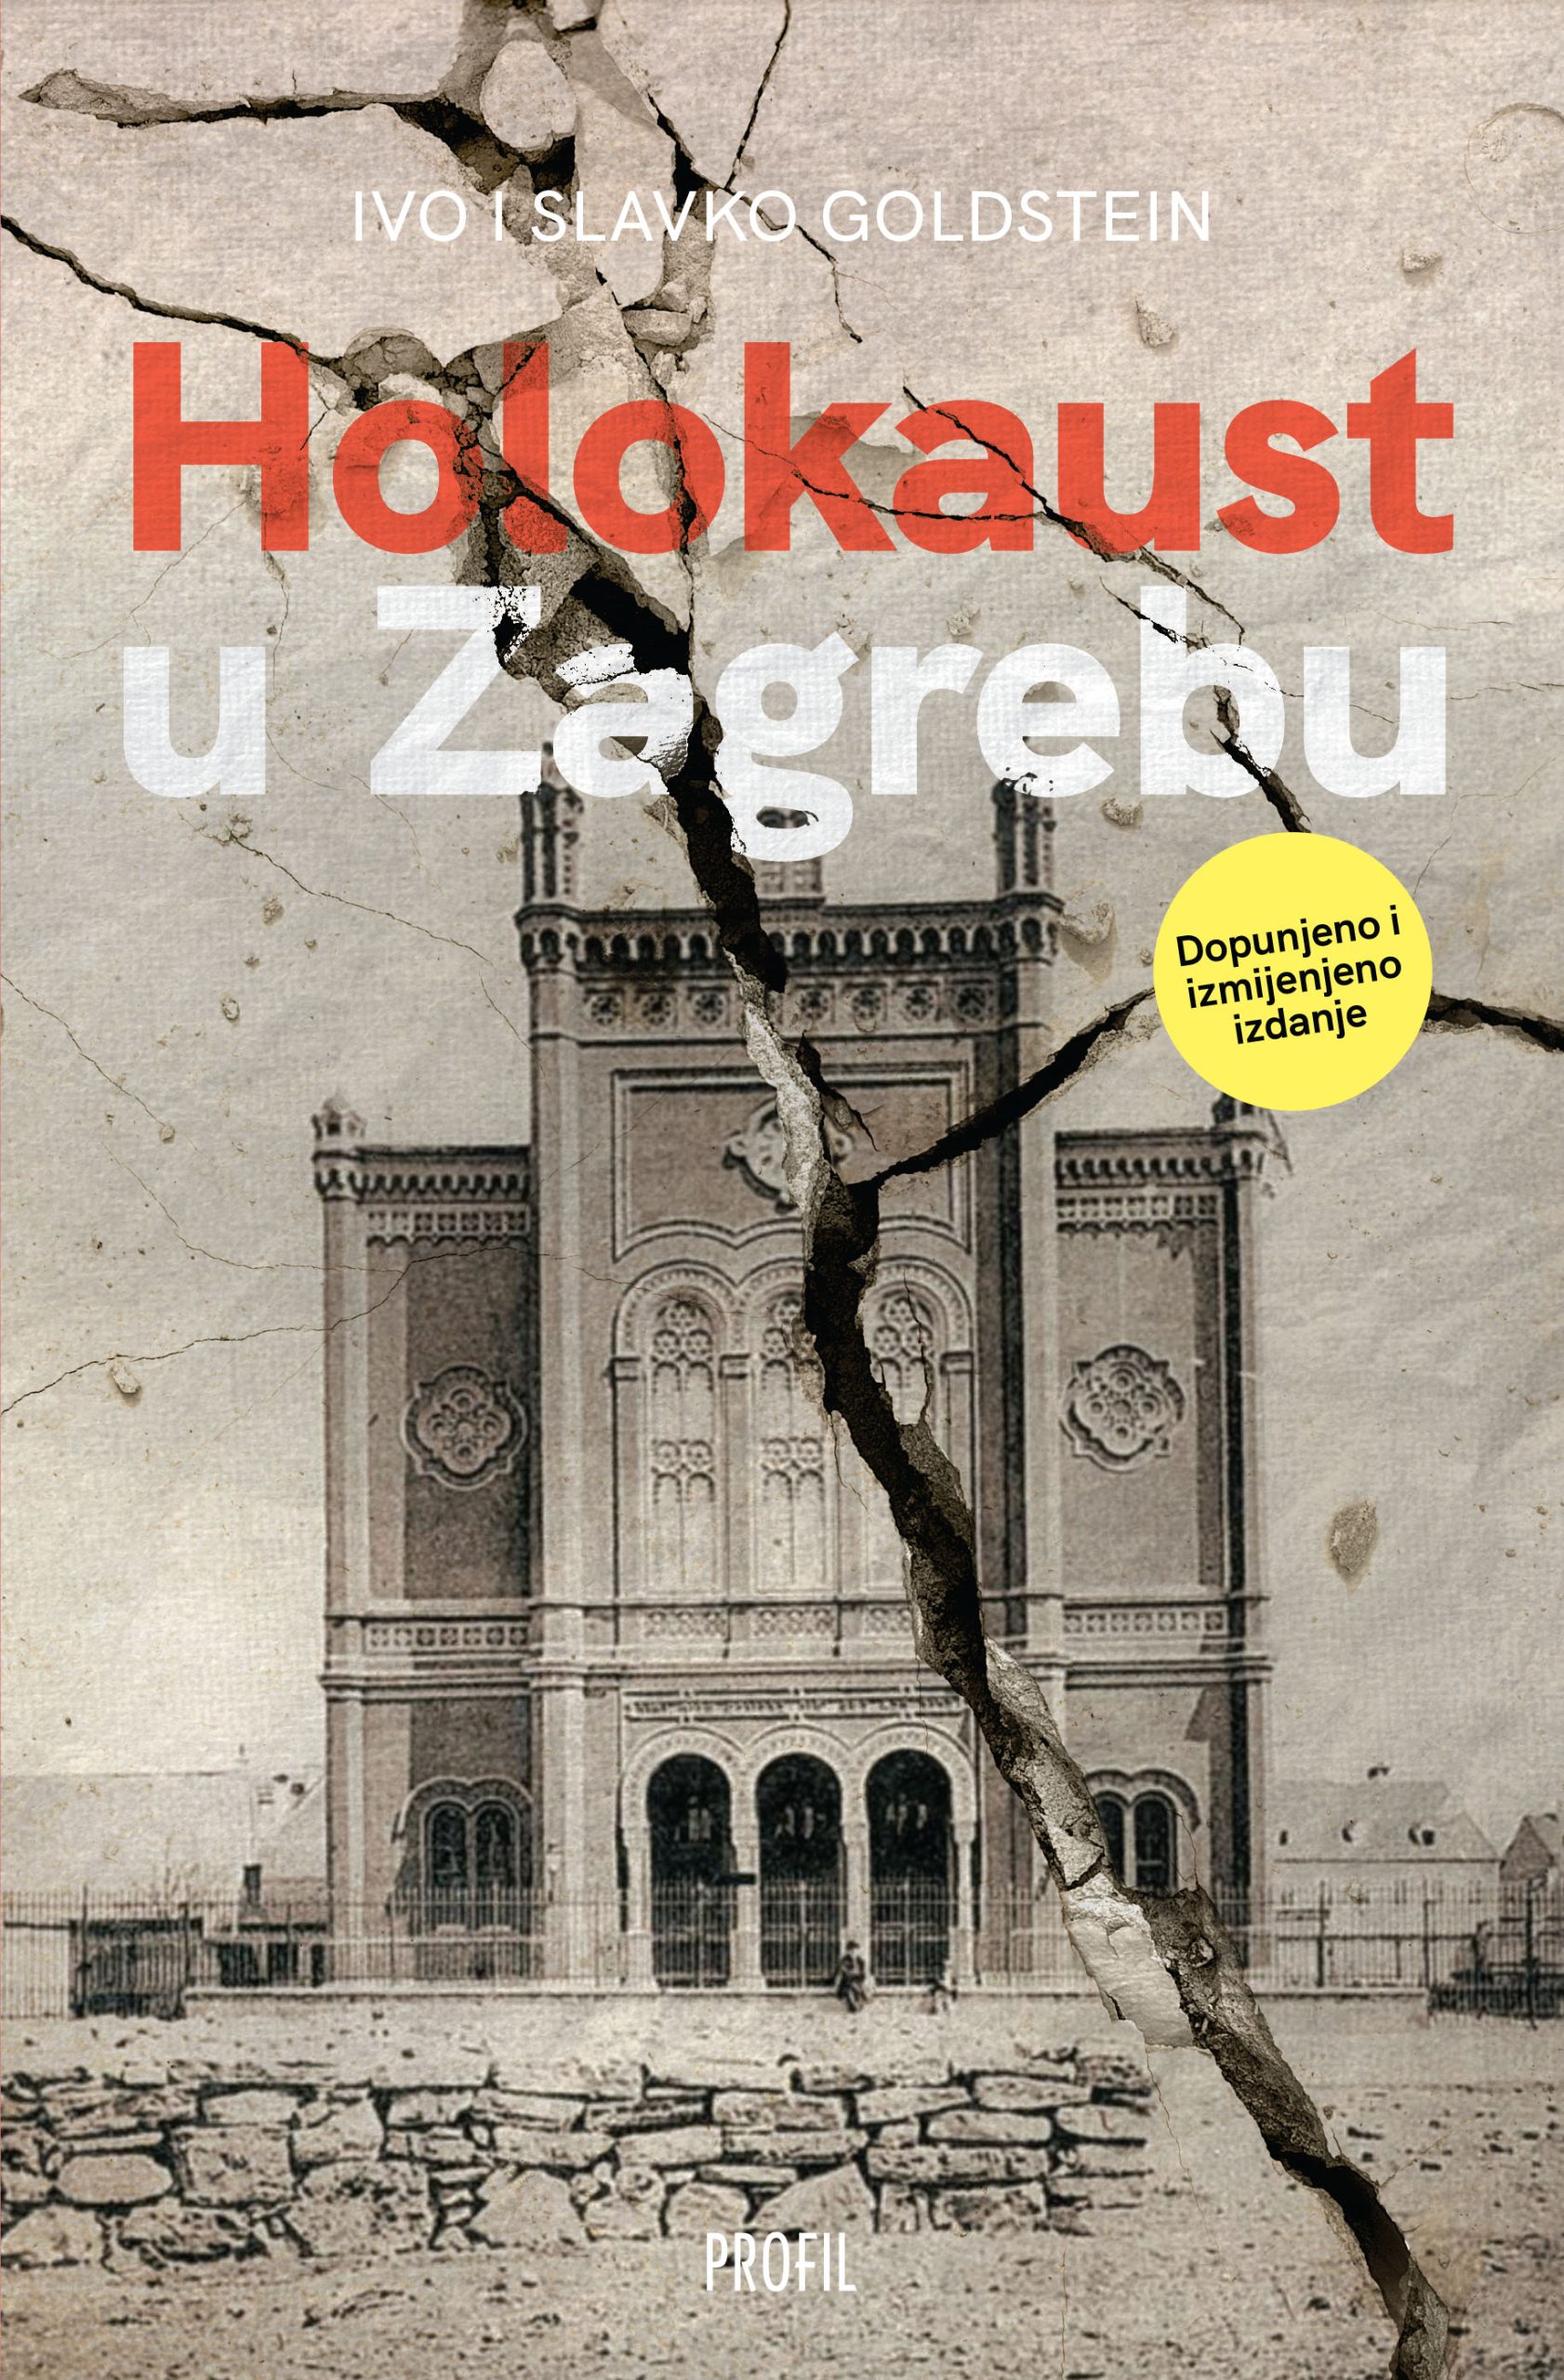 Holokaust u Zagrebu - 2. dopunjeno i izmijenjeno izdanje